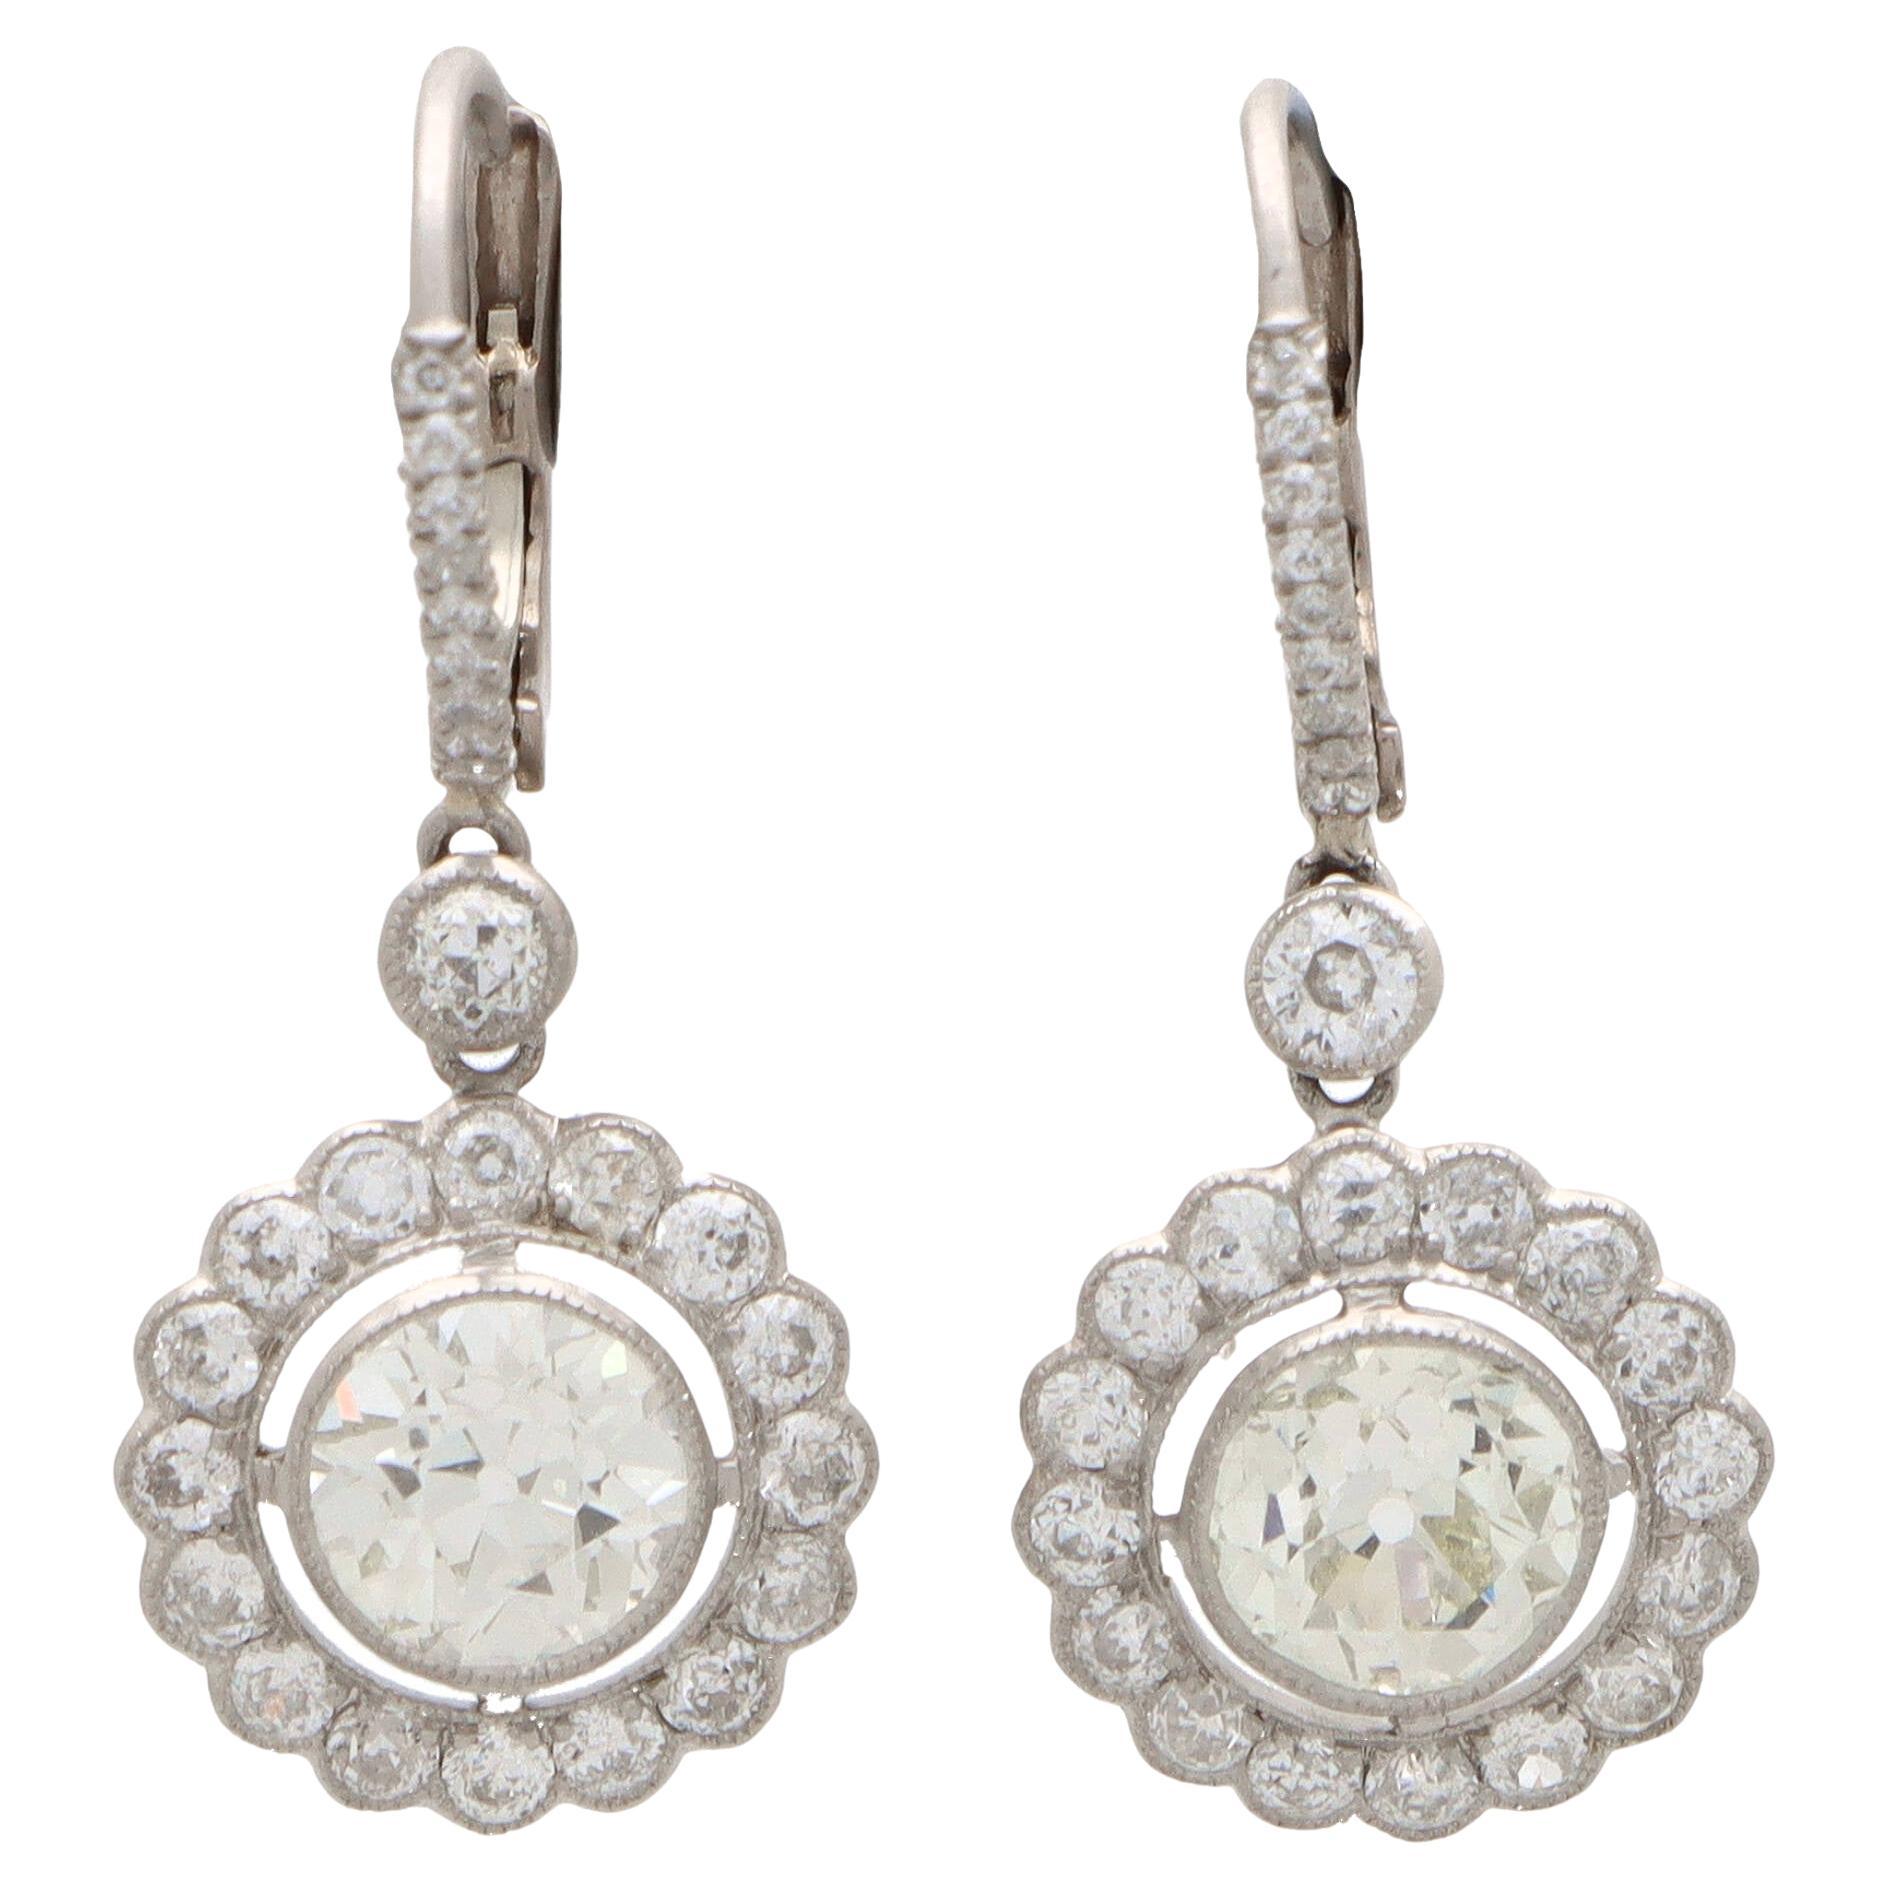 Vintage Inspired Old Cut Diamond Cluster Drop Earrings Set in Platinum